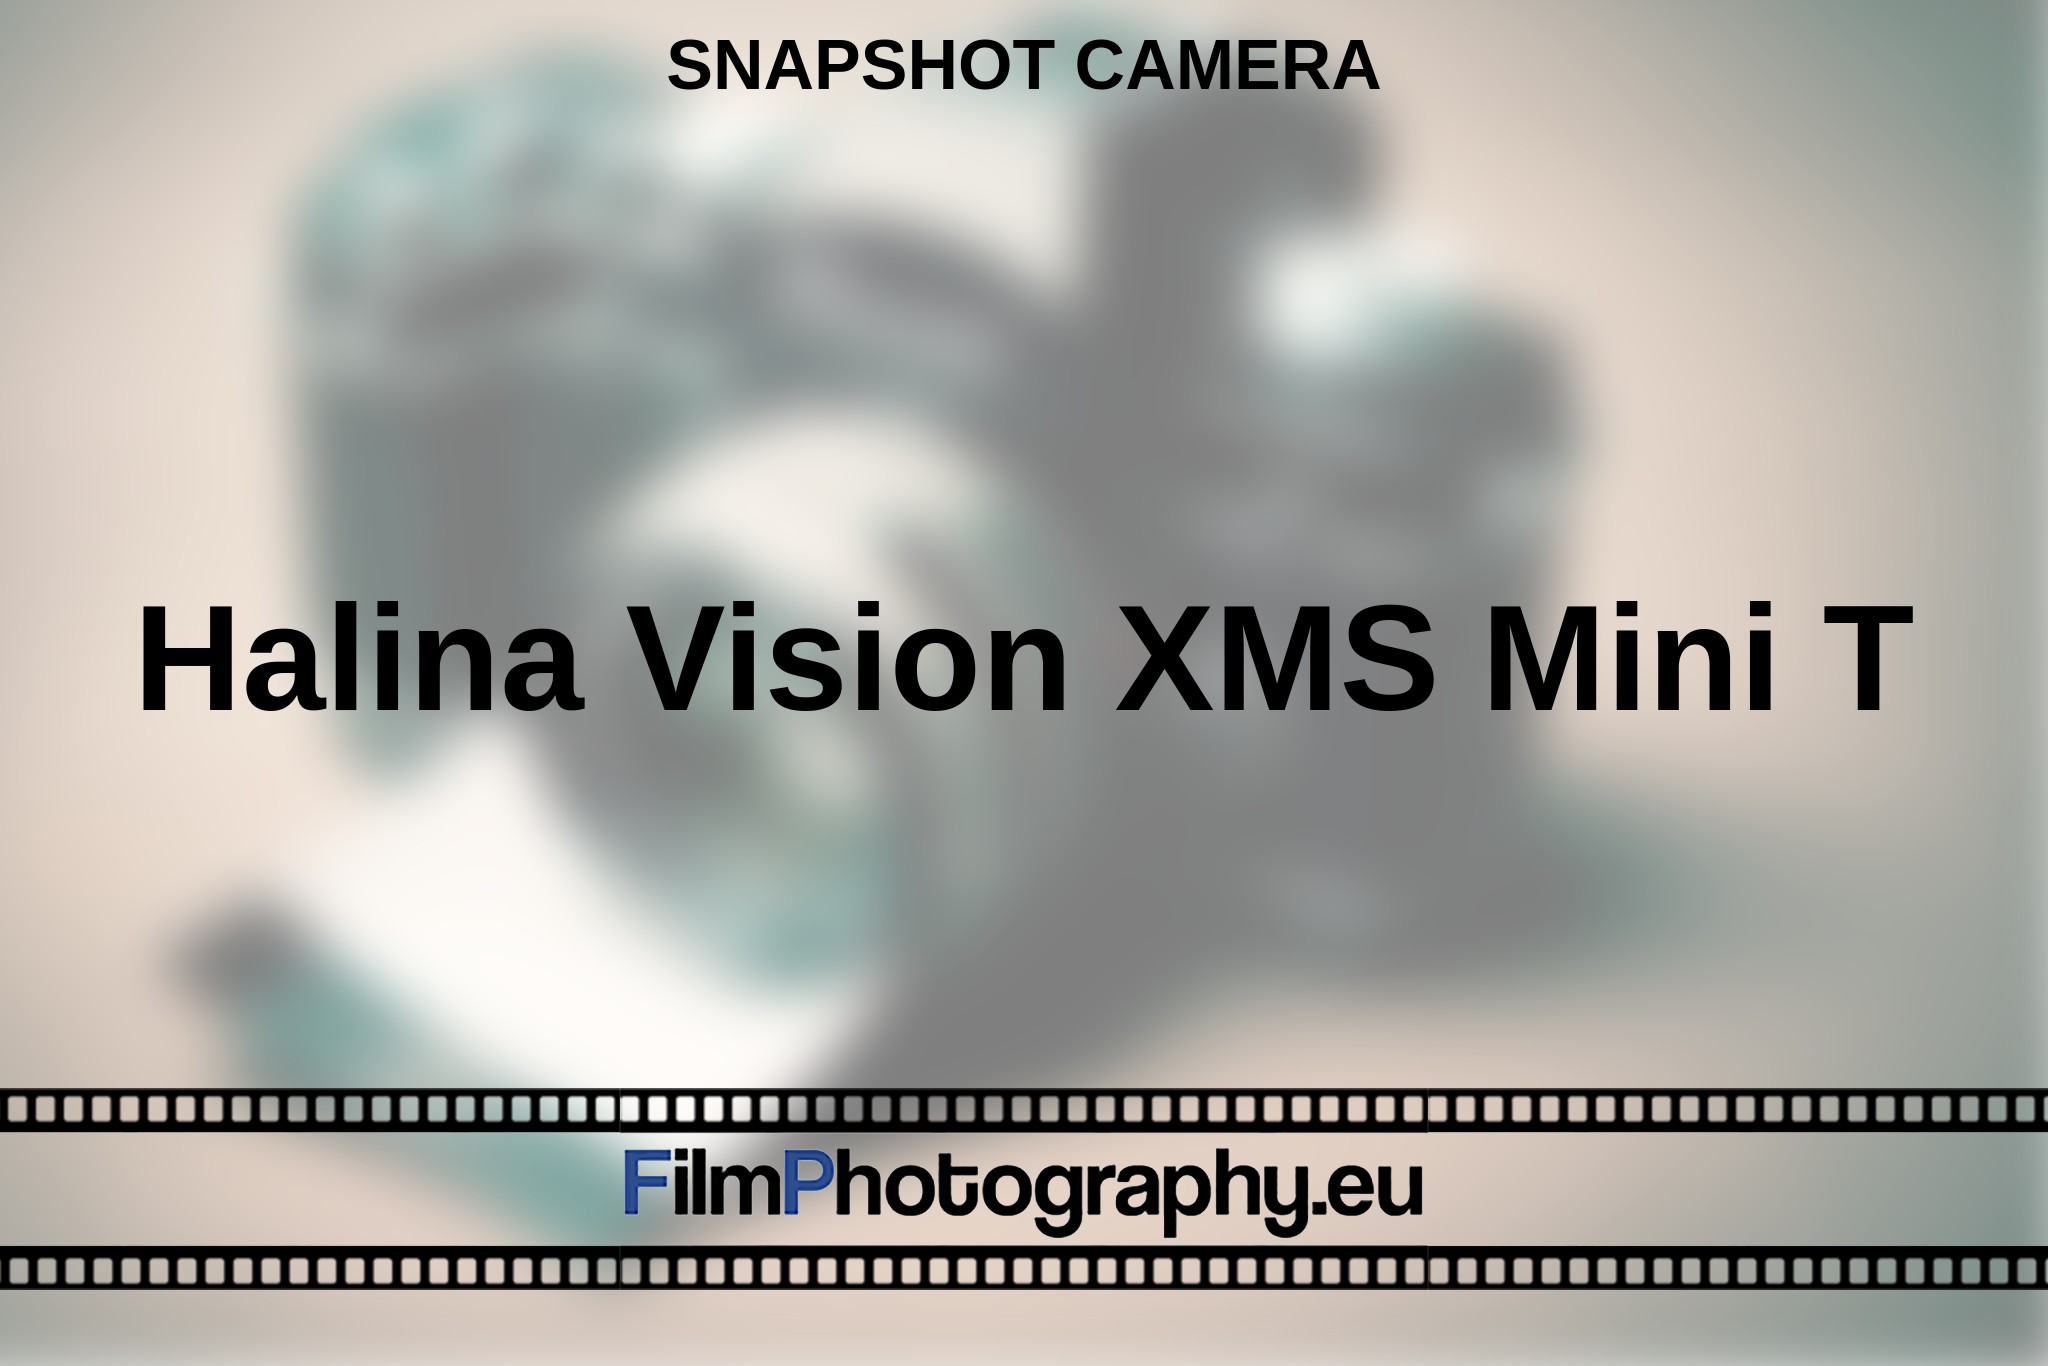 halina-vision-xms-mini-t-snapshot-camera-en-bnv.jpg